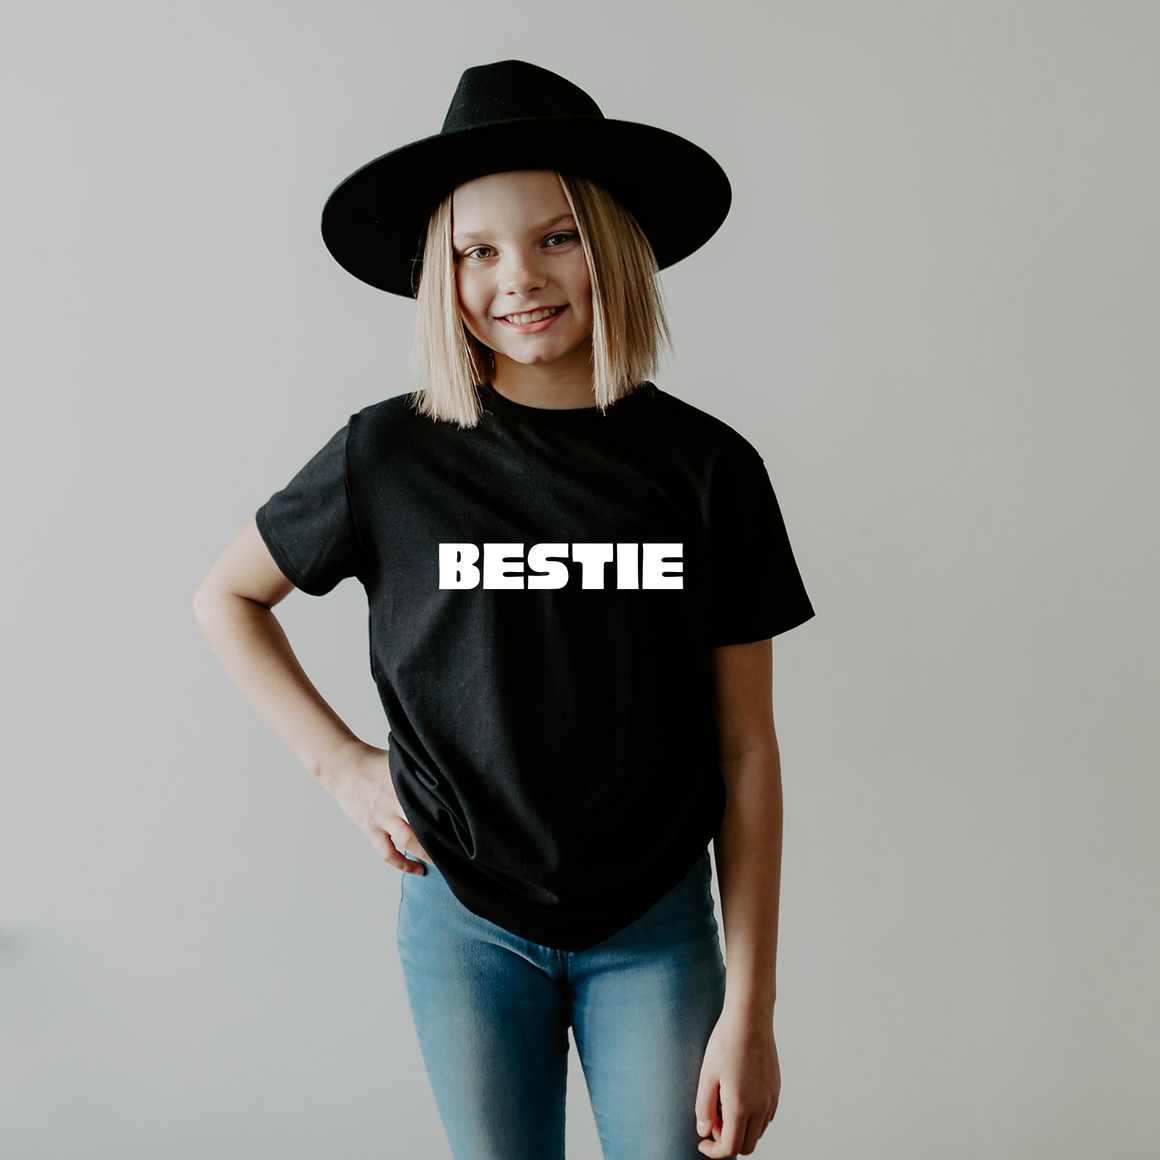 Bestie Tee Shirt Youth - Posh & Cozy